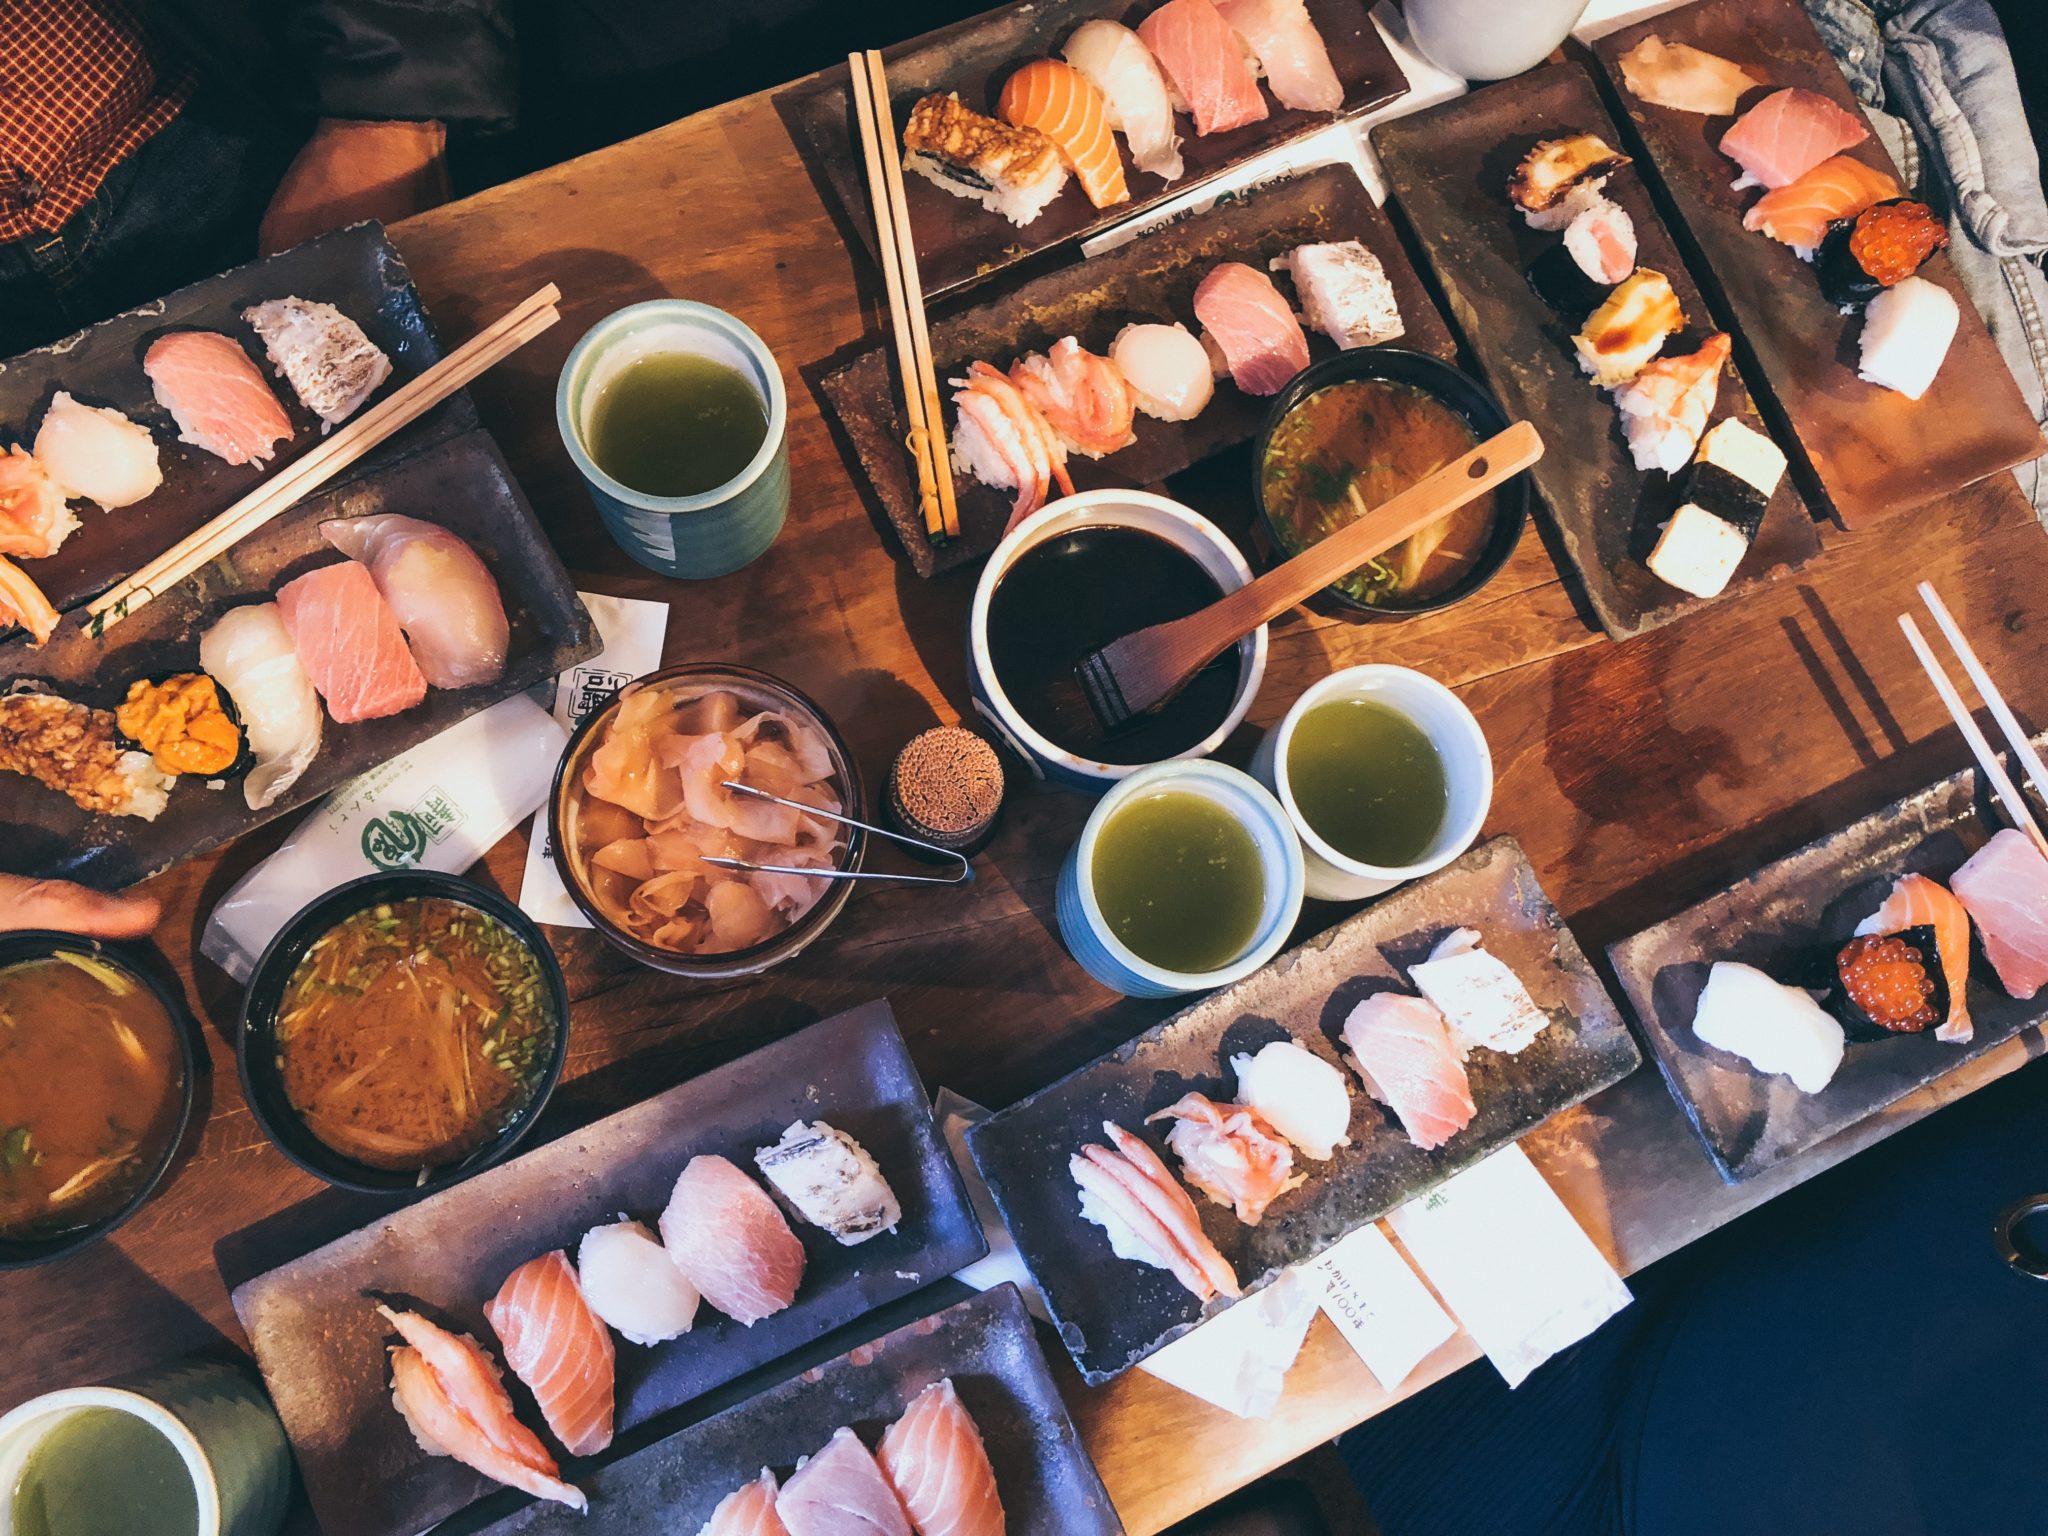 Japonia, Tokio, sushi, restauracja, jedzenie, danie, ryba, ryż, kanjpka, knajpa, rolki sushi, umami, kuchnia japońska